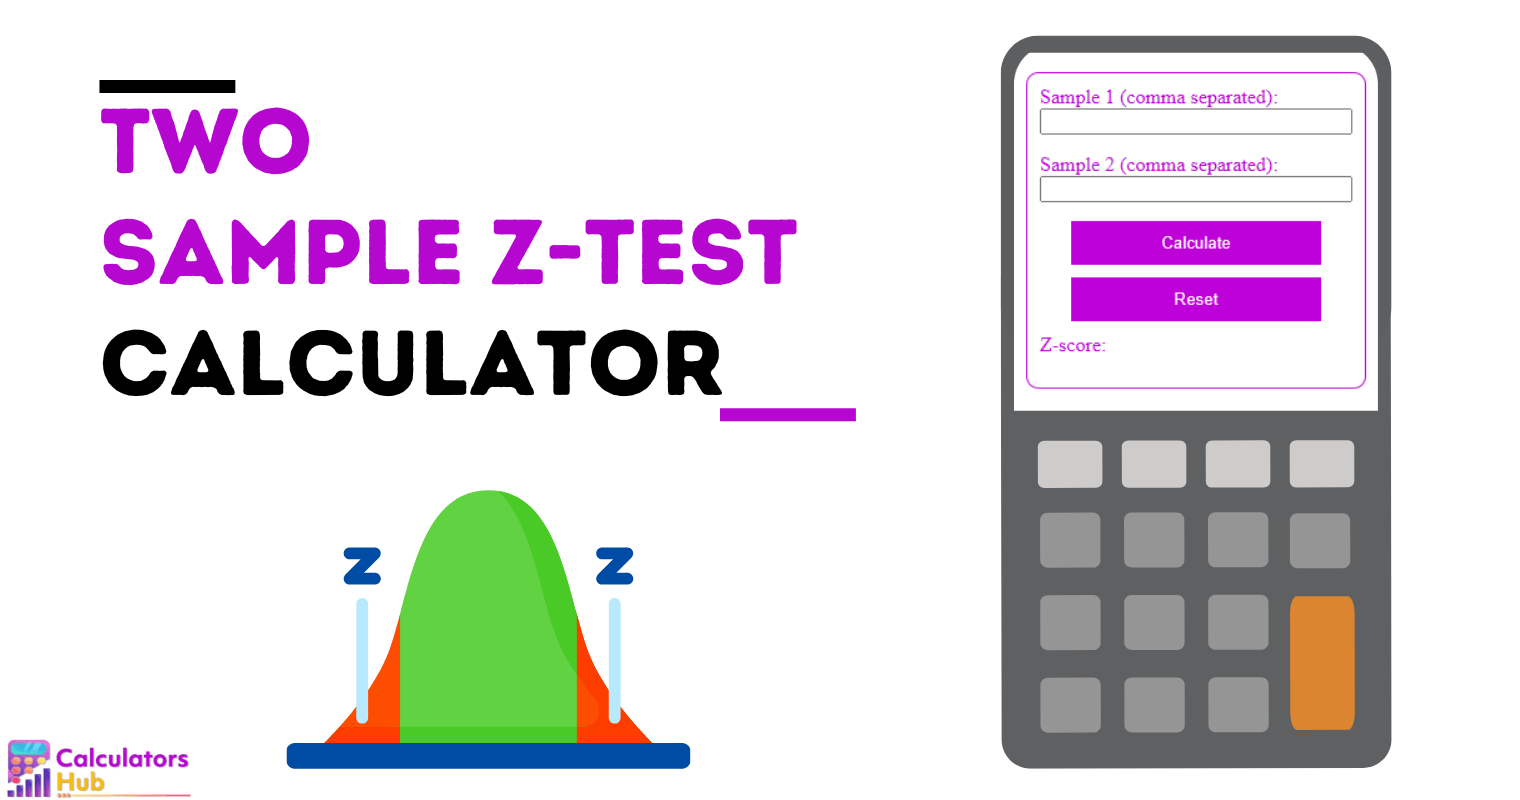 Calculadora de prueba Z de dos muestras